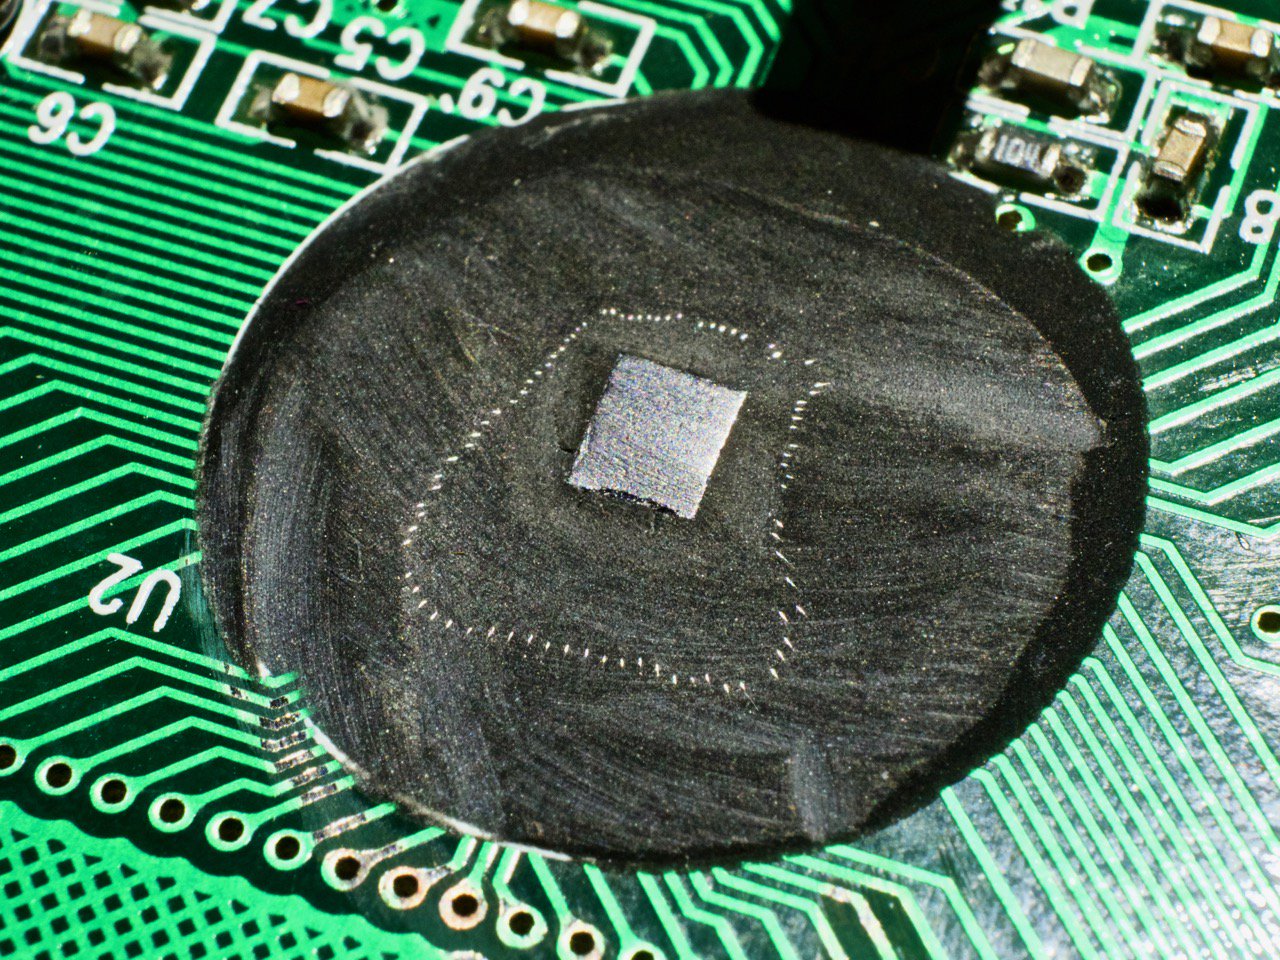 Бескопрусная микросхема LCD драйвера, покрытая эпоксидной смолой